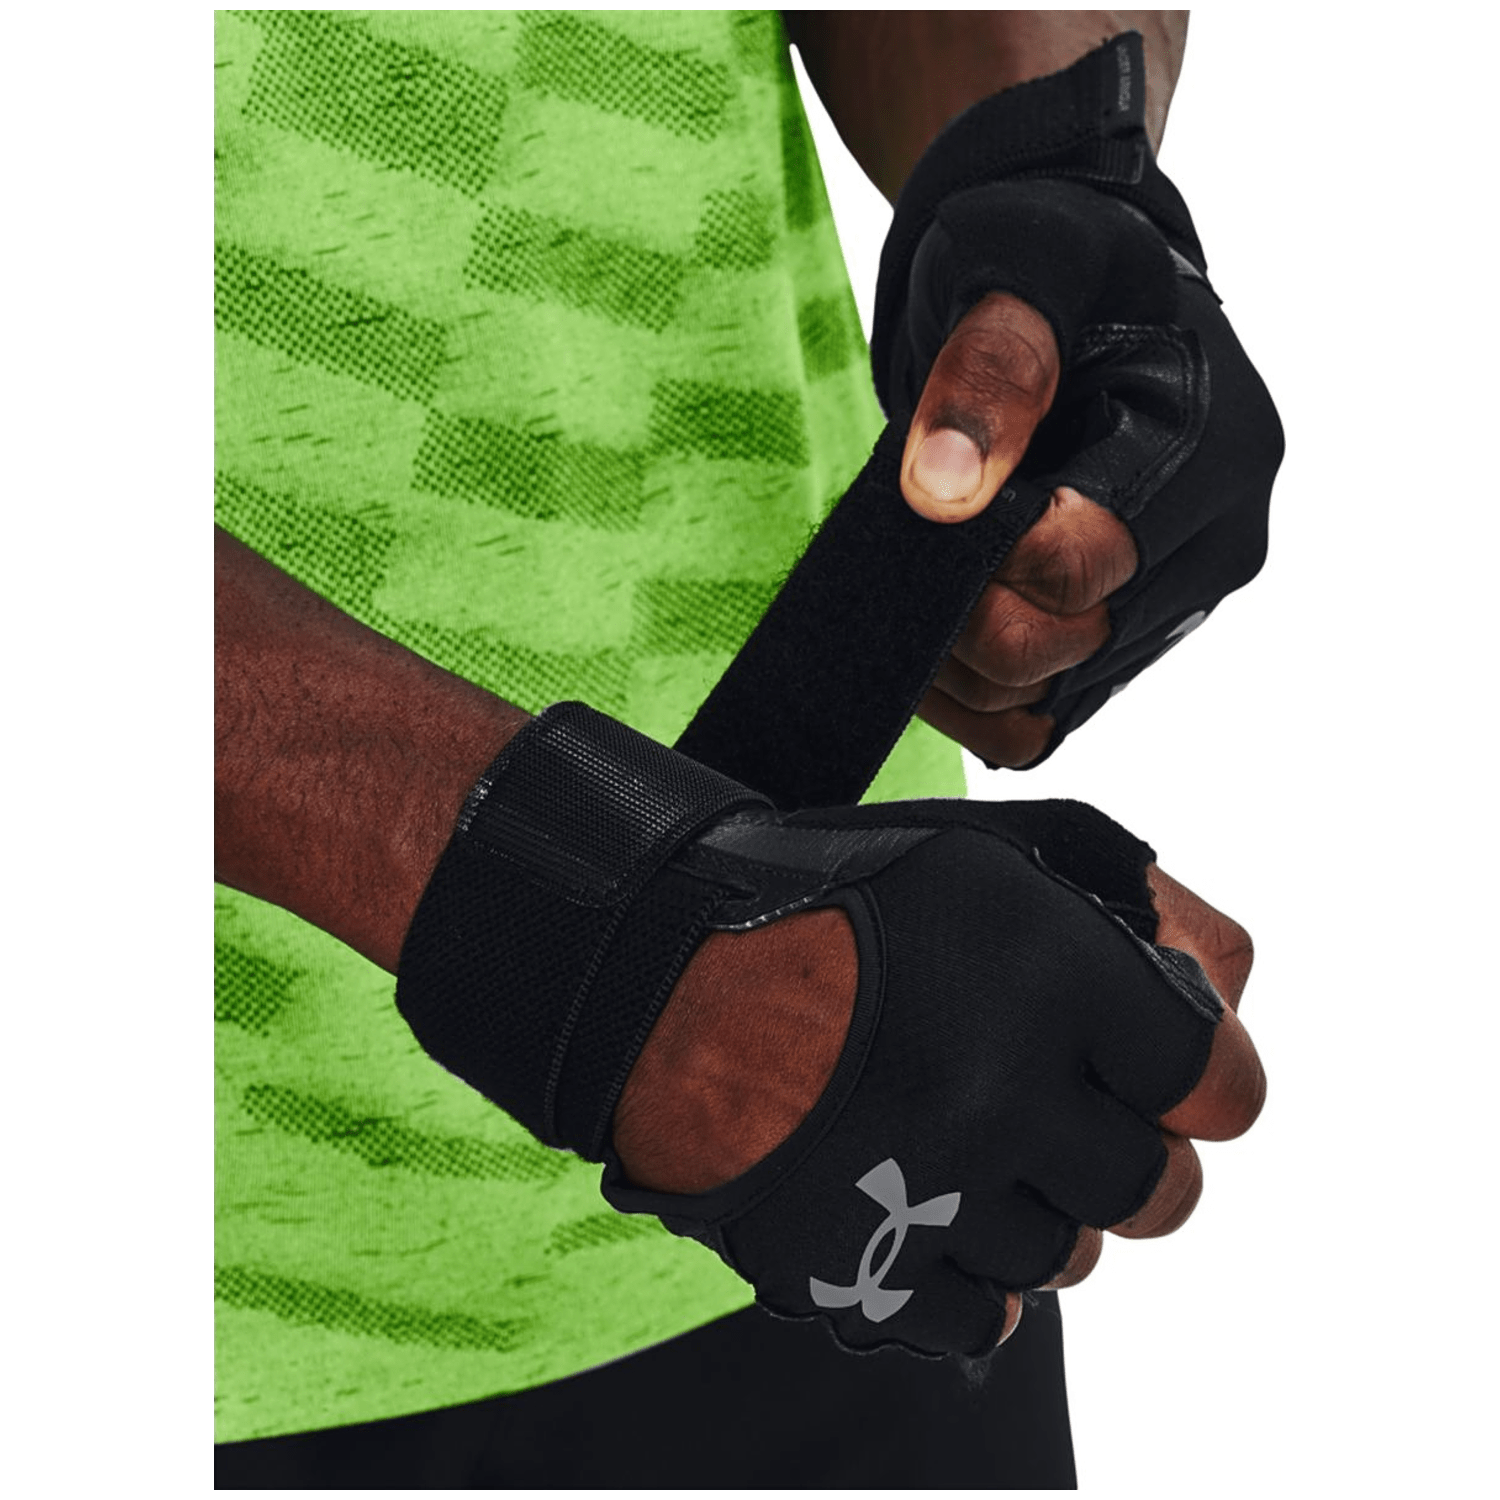 Under Armour M's Weightlifting Gloves Herren Fingerhandschuhe